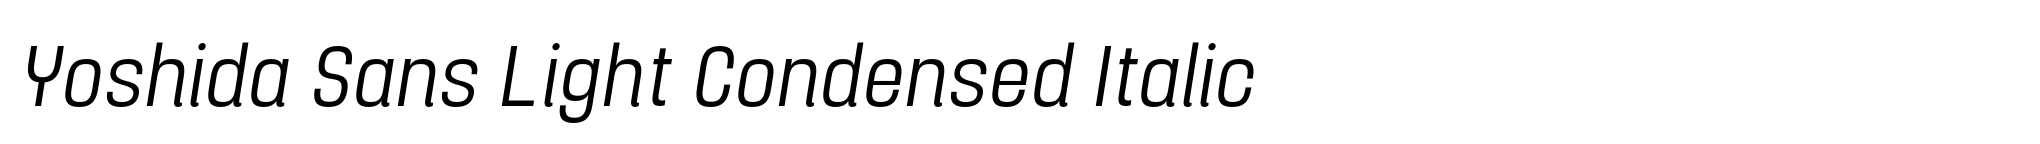 Yoshida Sans Light Condensed Italic image